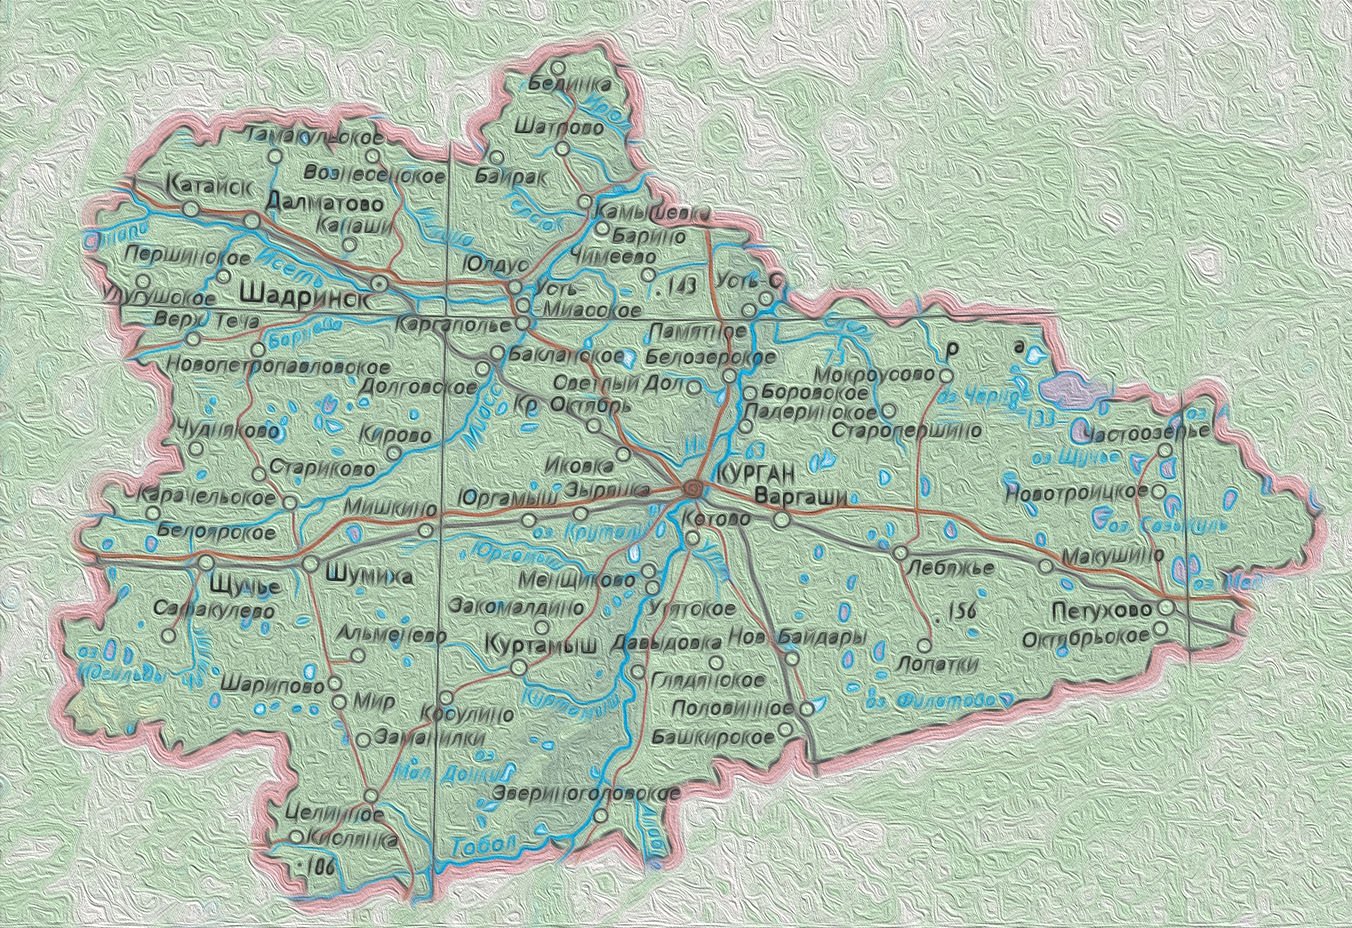 Показать на карте курганскую область с городами. Реки Курганской области на карте. Река Чумляк Курганская область. Карта Курганской области. Карта Шатровского района Курганской области.